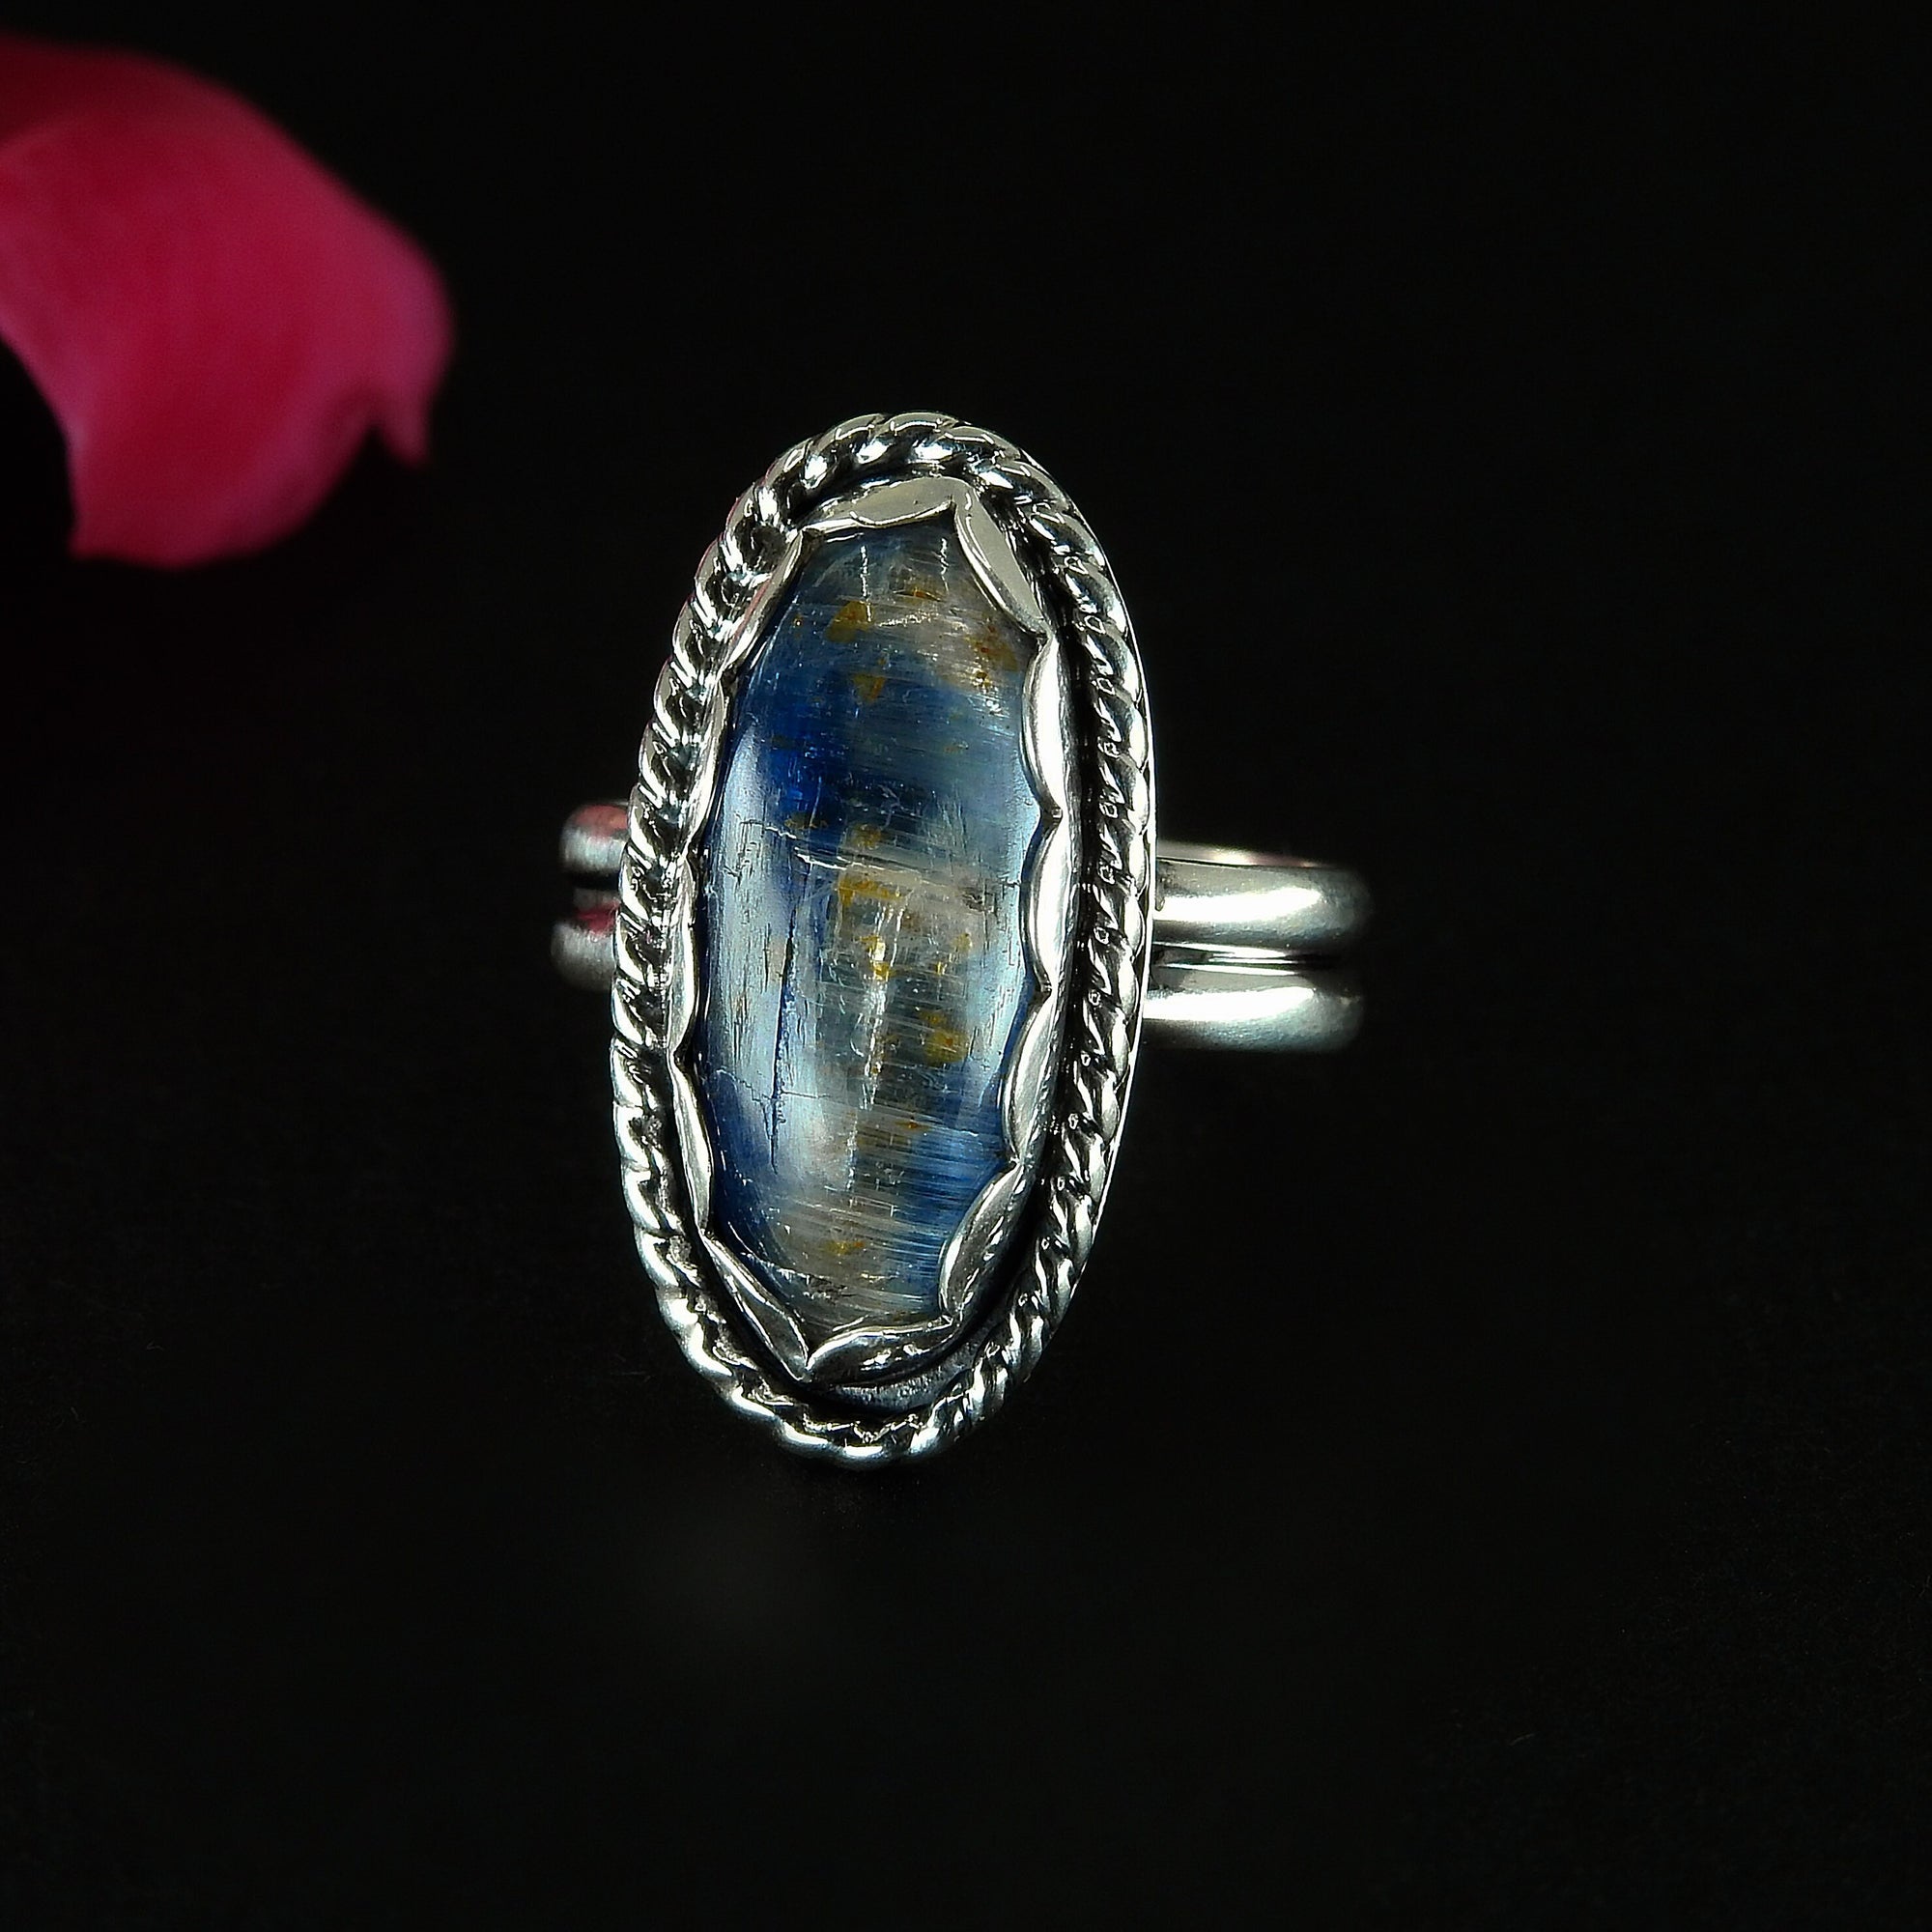 Blue Kyanite Ring - Size 6 1/2 - Sterling Silver - Large Kyanite Statement Ring - Oval Kyanite Jewellery - OOAK Kyanite Gemstone Ring